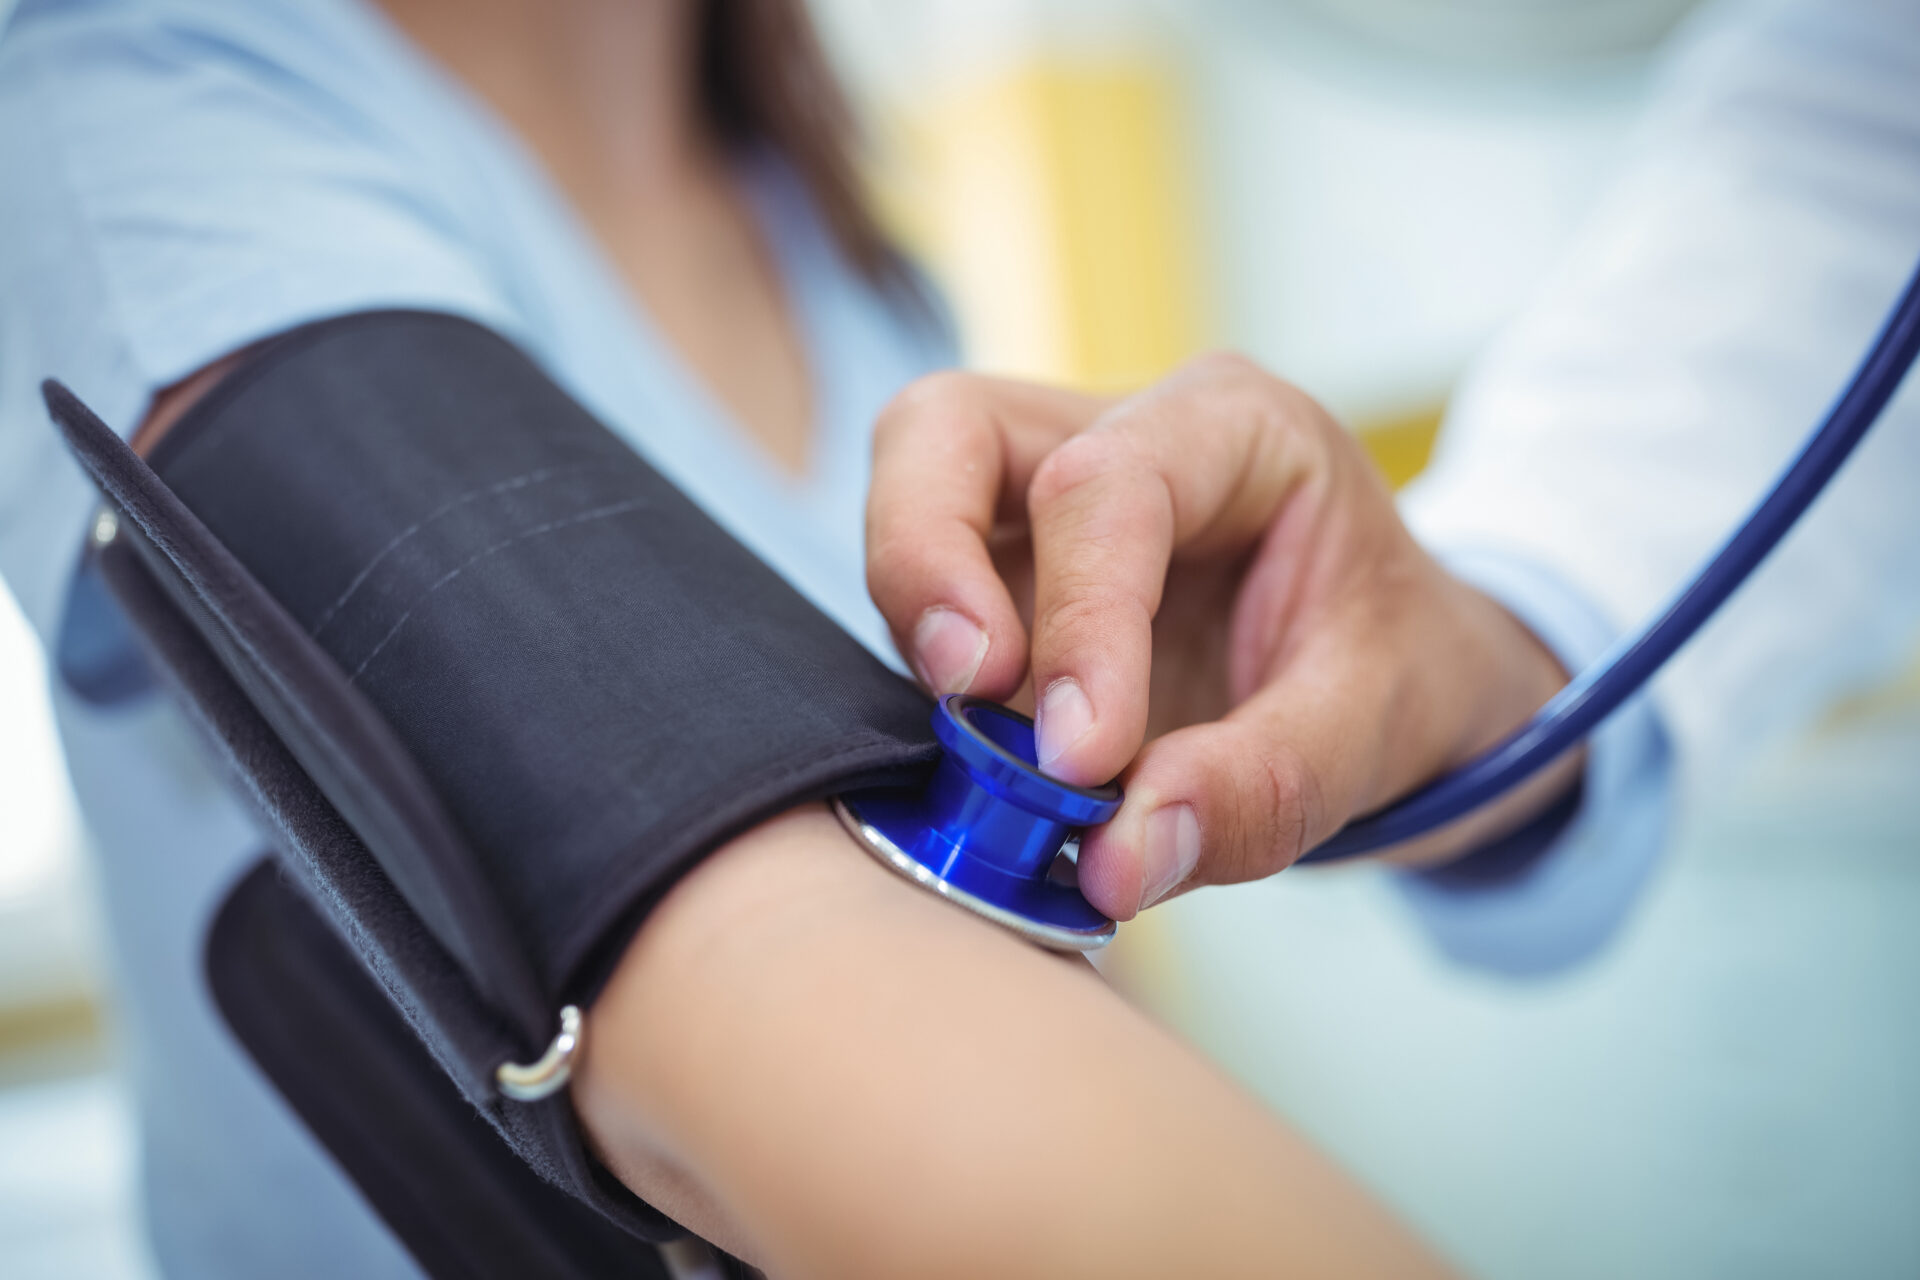 Gestione dell’ipertensione: come monitorare e controllare la pressione sanguigna a casa